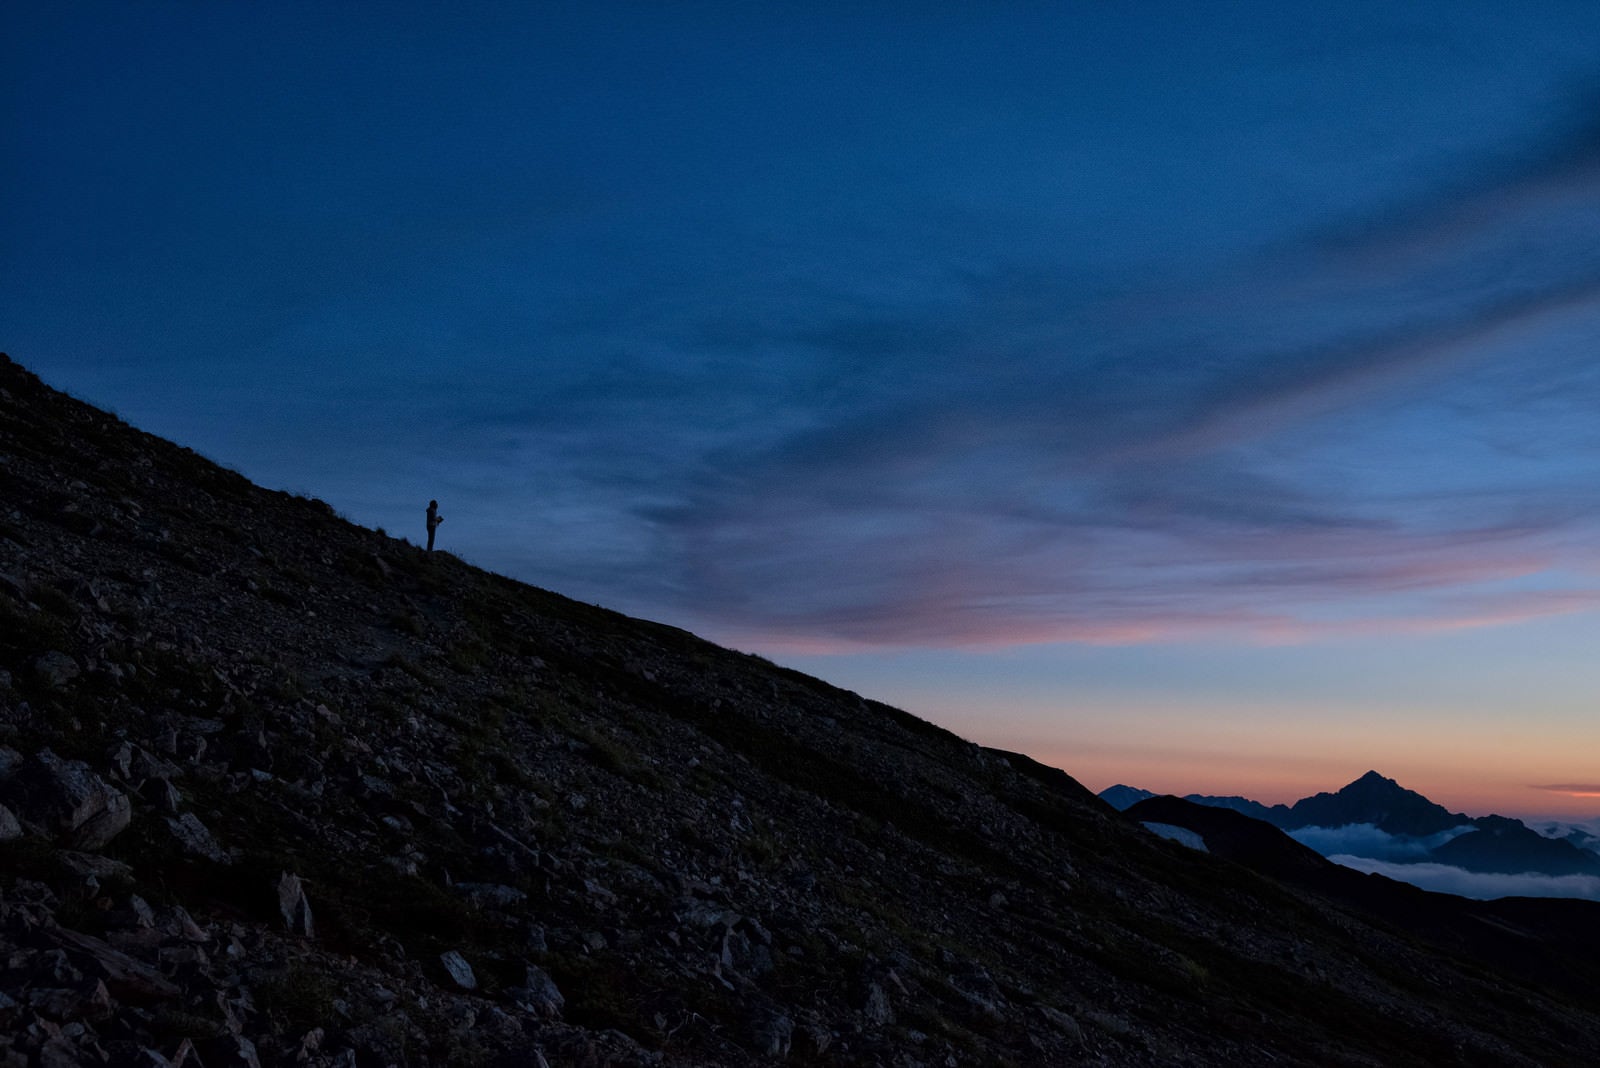 「夕焼け空と黄昏れる登山者のシルエット」の写真